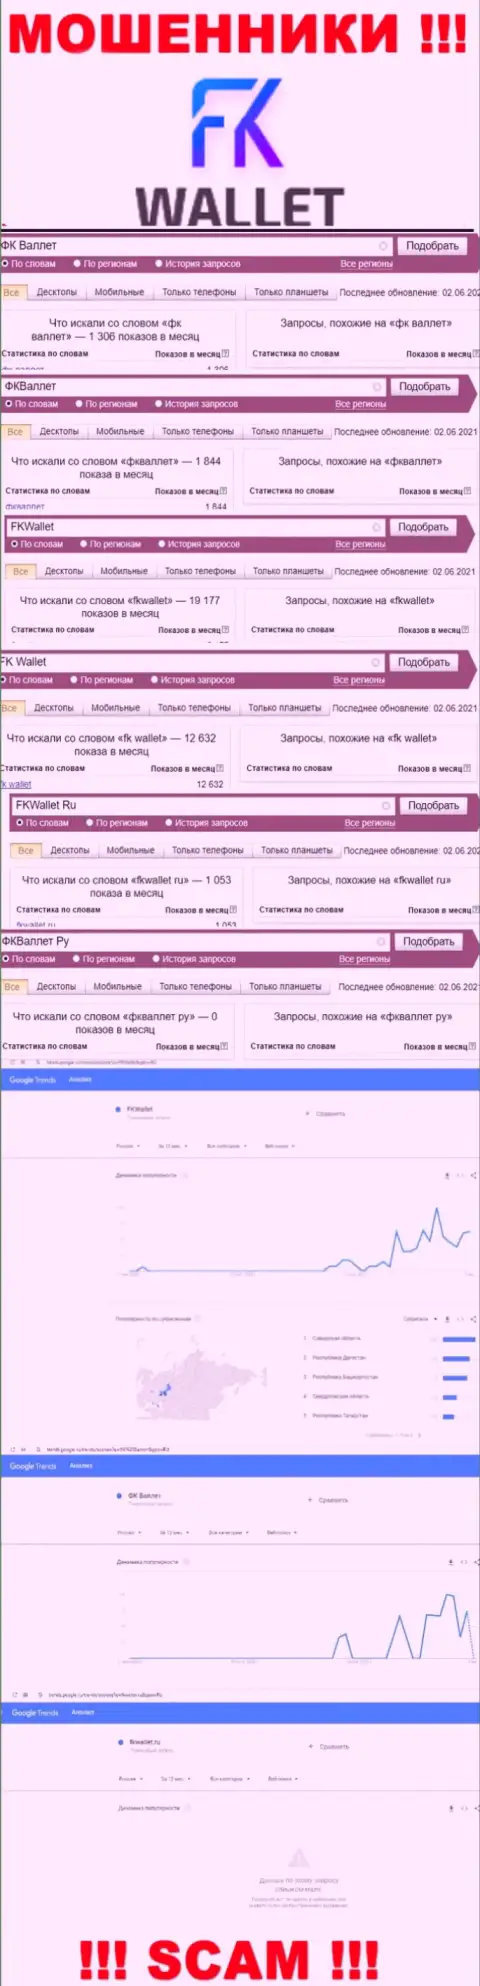 Скрин статистики онлайн-запросов по преступно действующей компании FKWallet